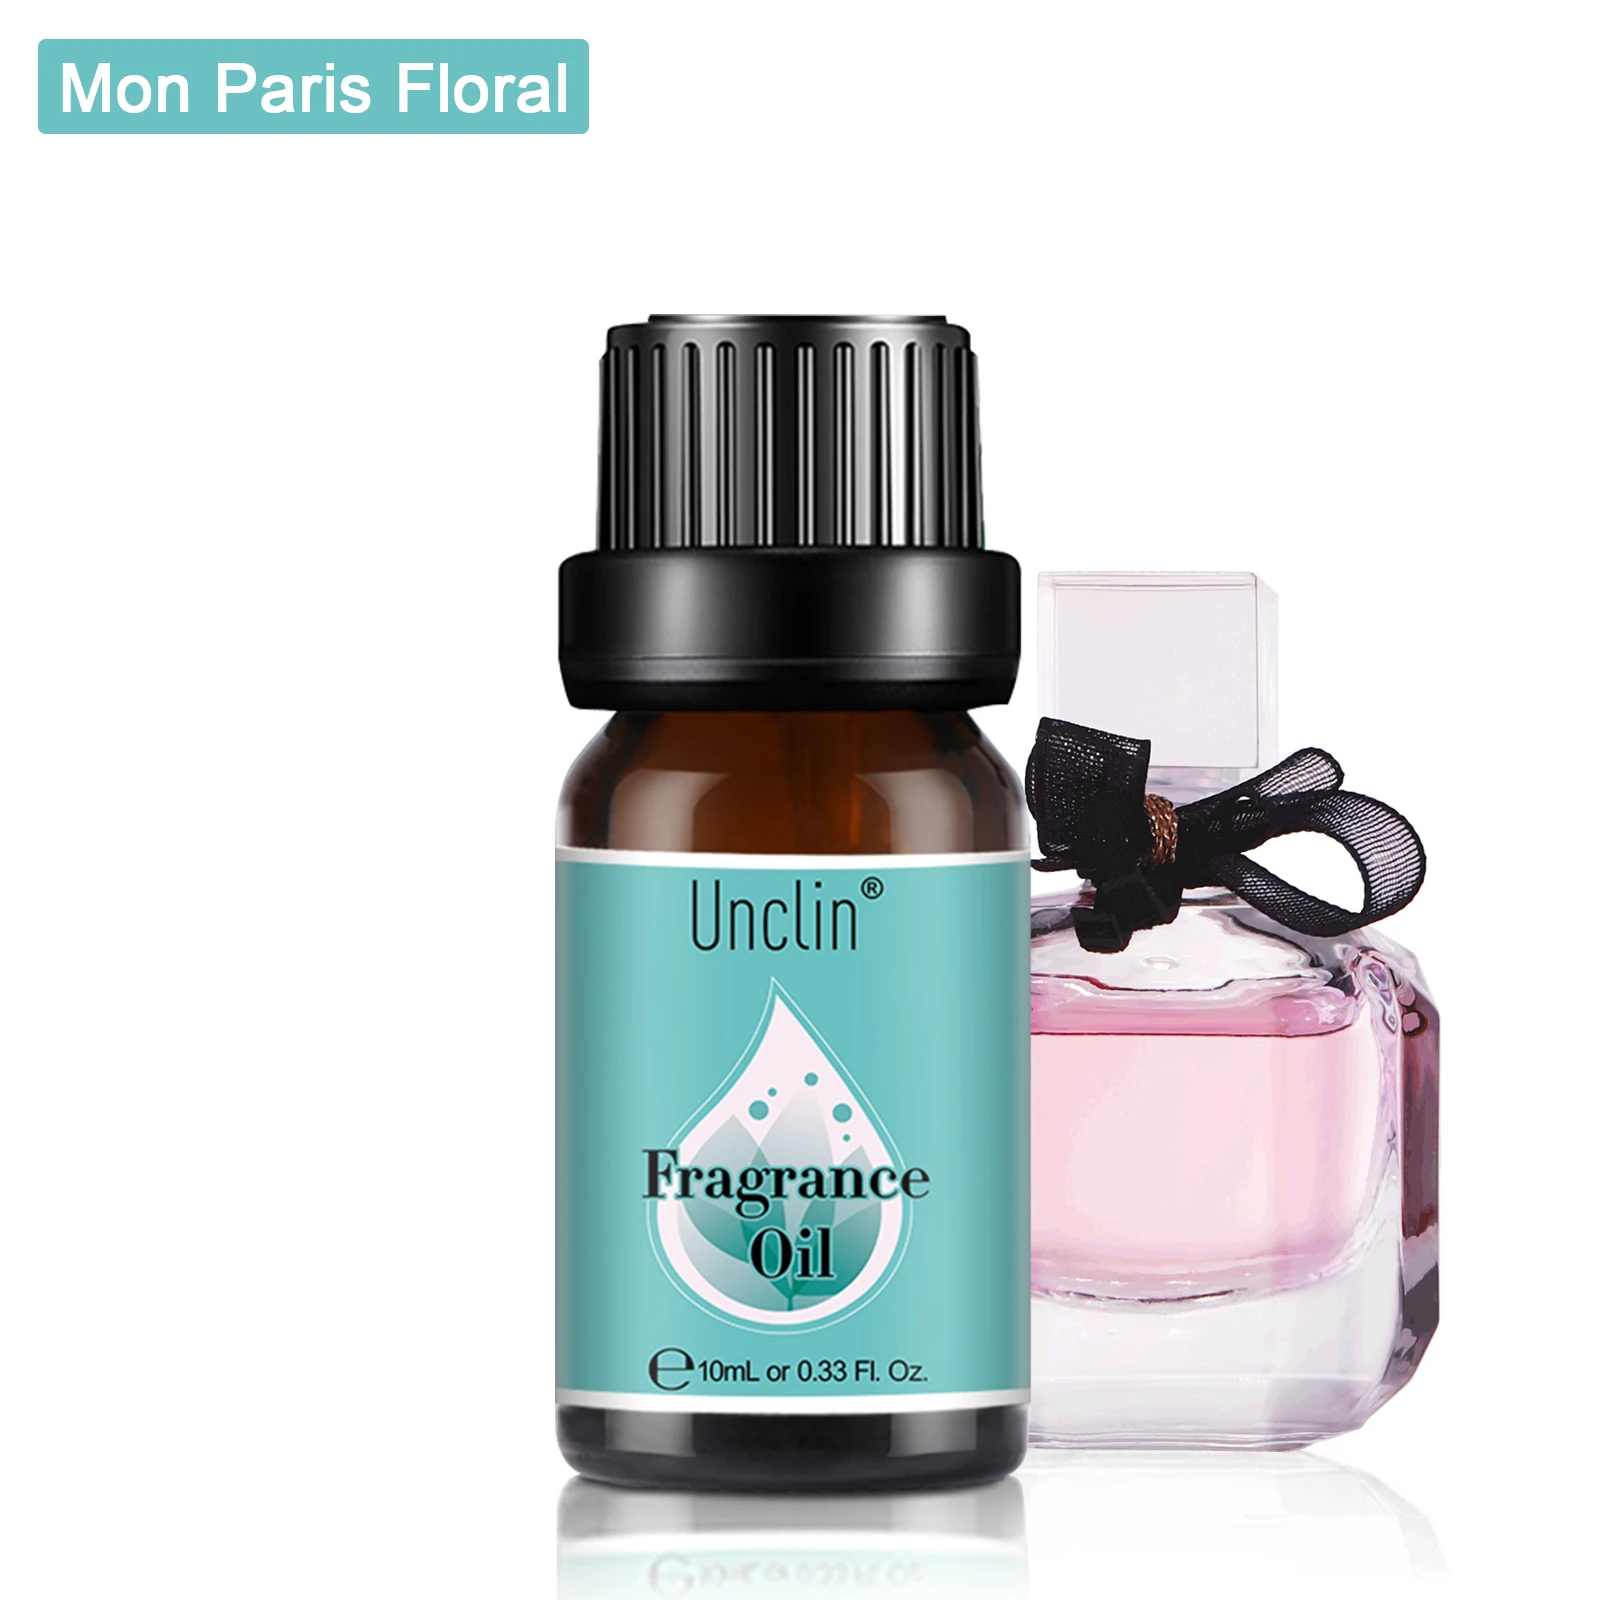 

Unclin 10ml Pure Essential Oils For Perfume Mon Paris Floral Angel Jadore Black Opium La Vie Est Belle Chance Fragrance Oil